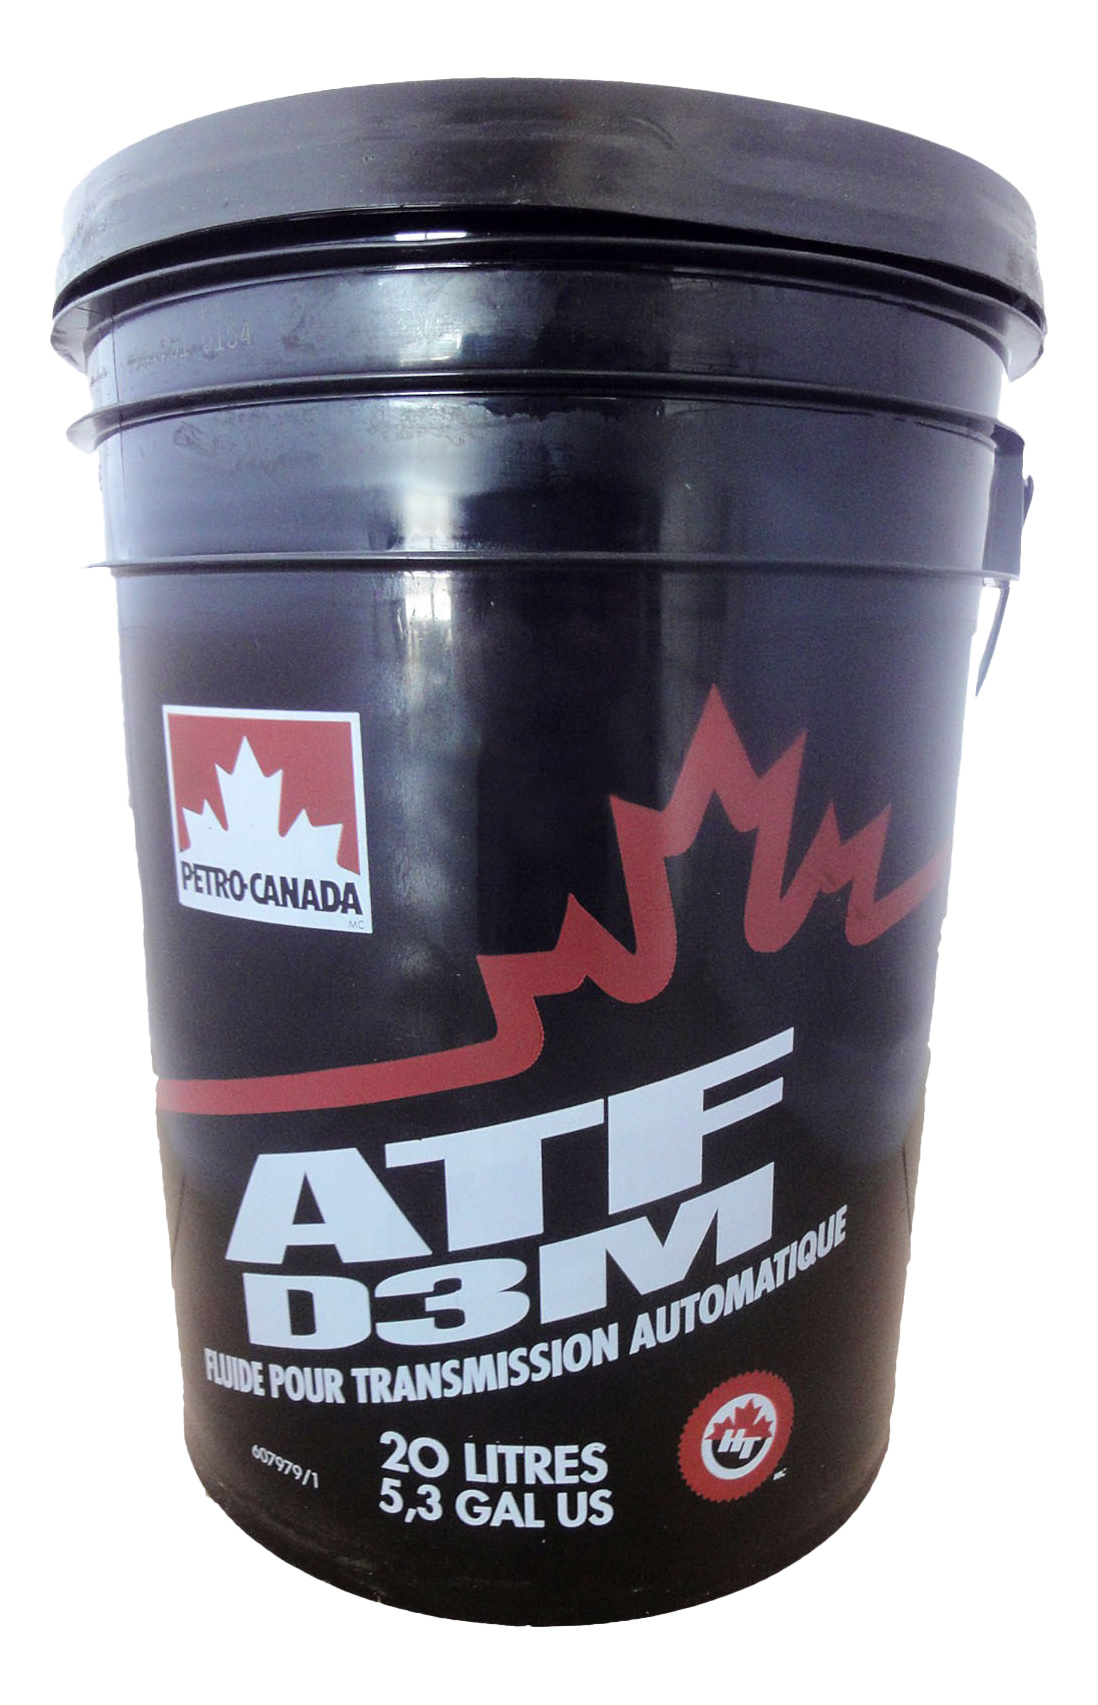 Atf d3. Petro-Canada ATF d3m. Трансмиссионное масло Petro-Canada ATF d3m. Petro-Canada 20л. Petro Canada 75w140.